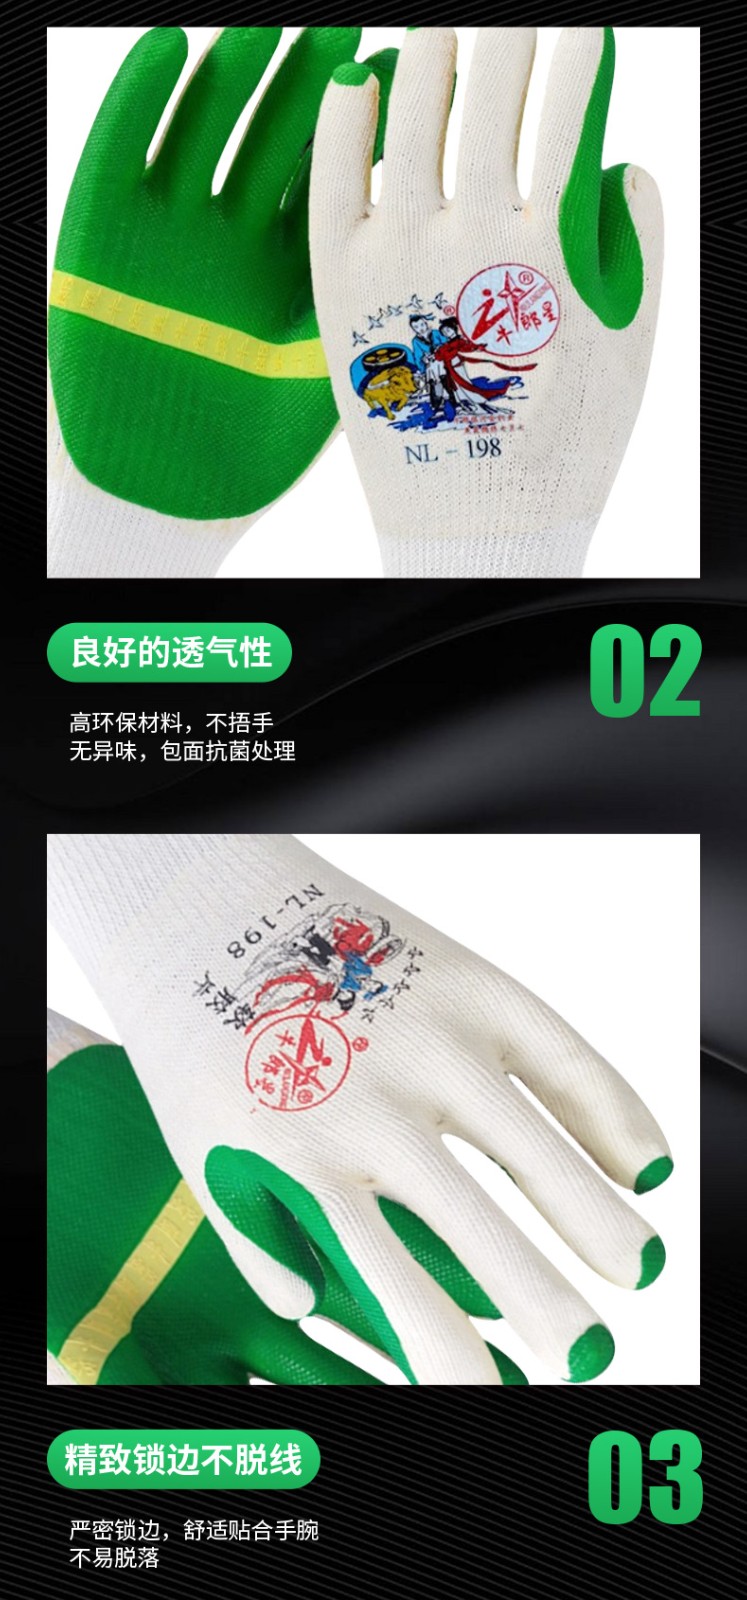 牛郎星NL-198白纱绿胶胶片手套